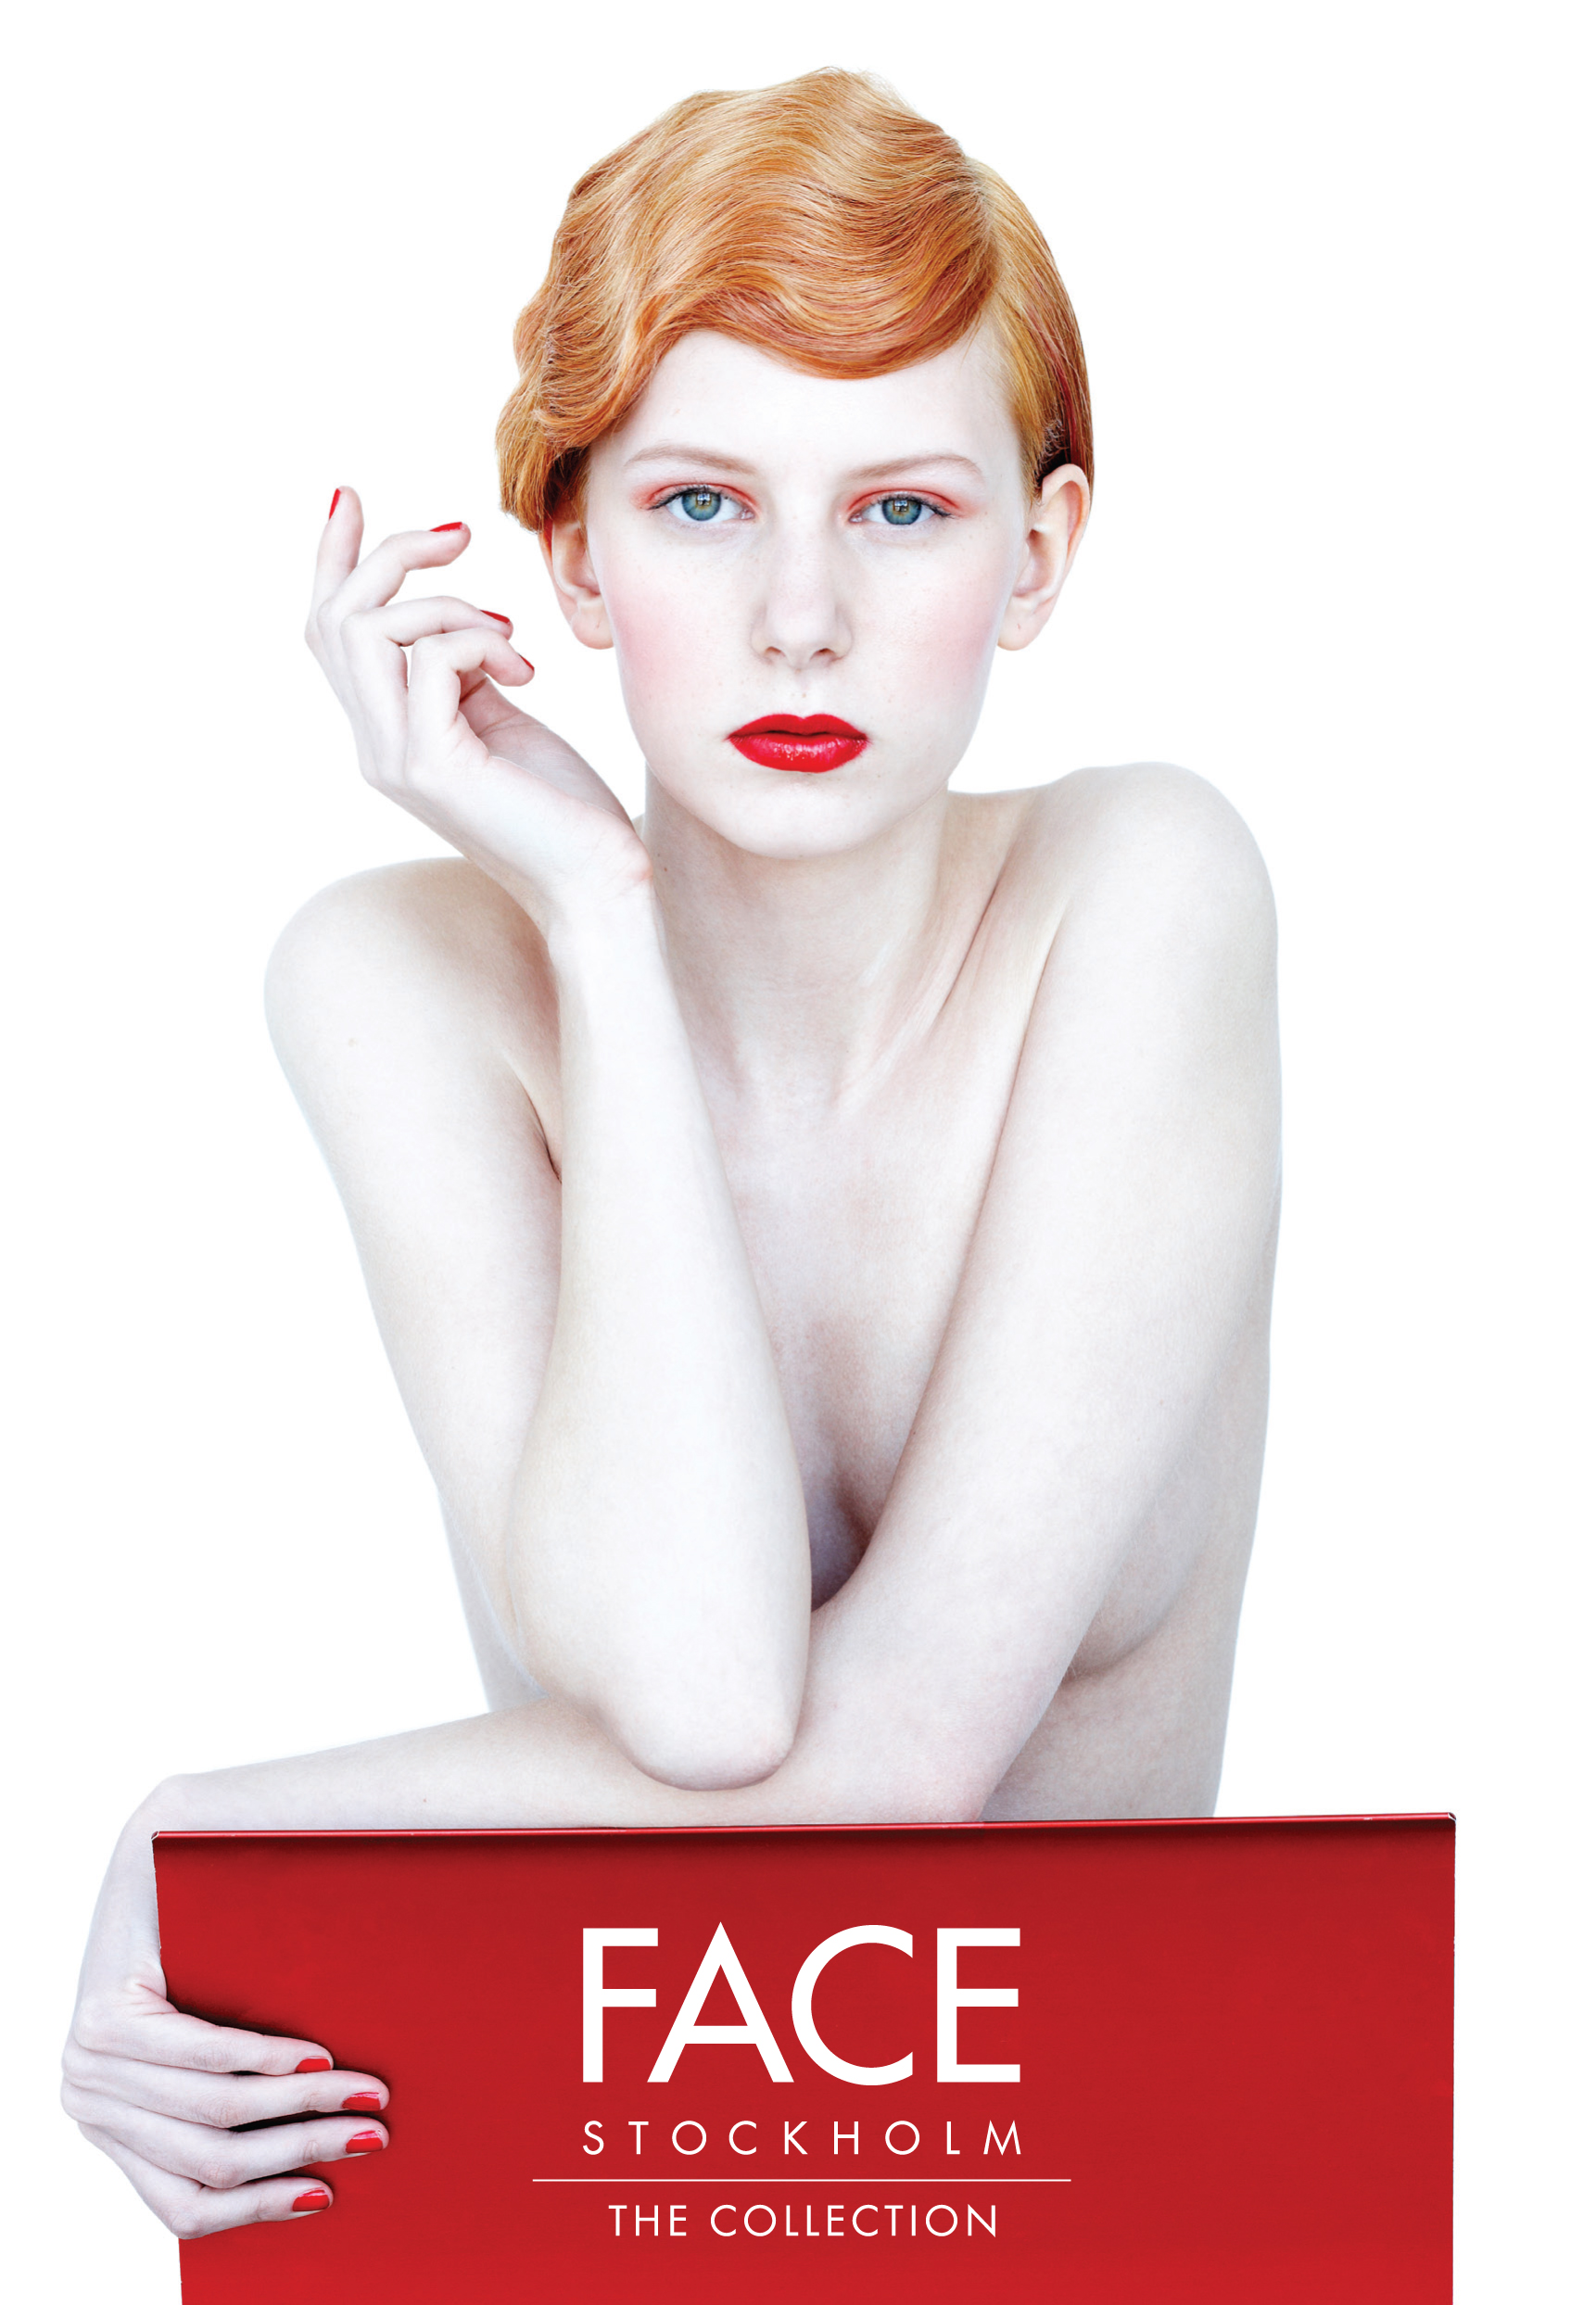 Wir arbeiten mit der dekorativen Kosmetik von FACE Stockholm